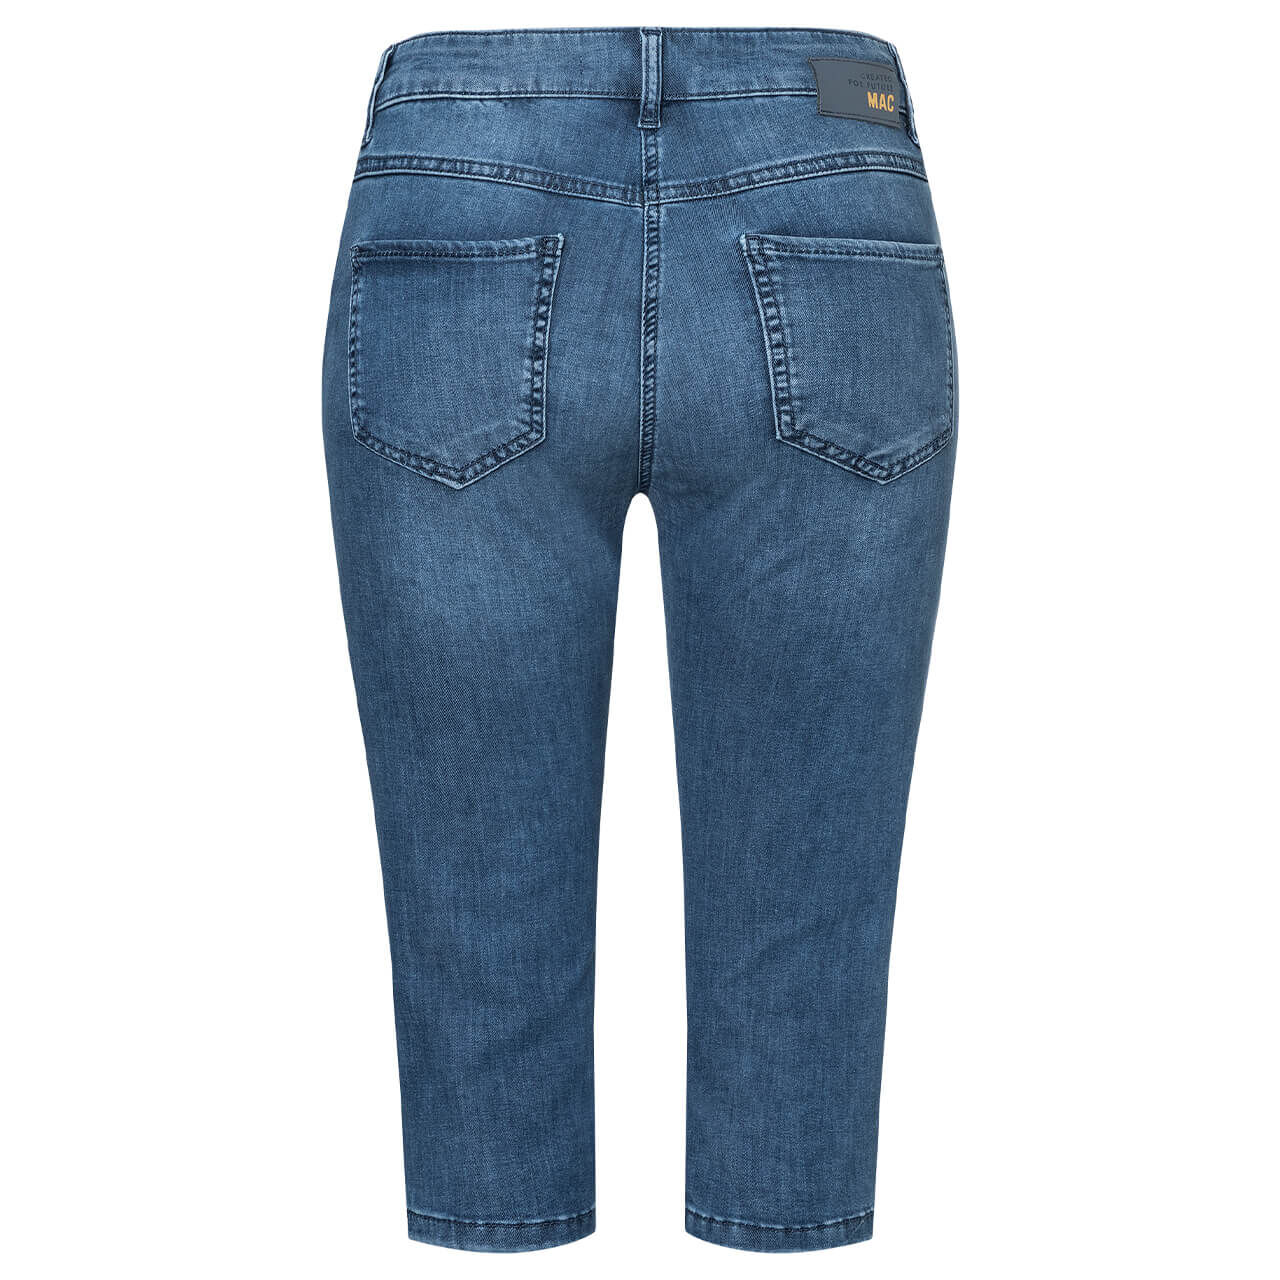 MAC Capri 3/4 Jeans fancy blue washed